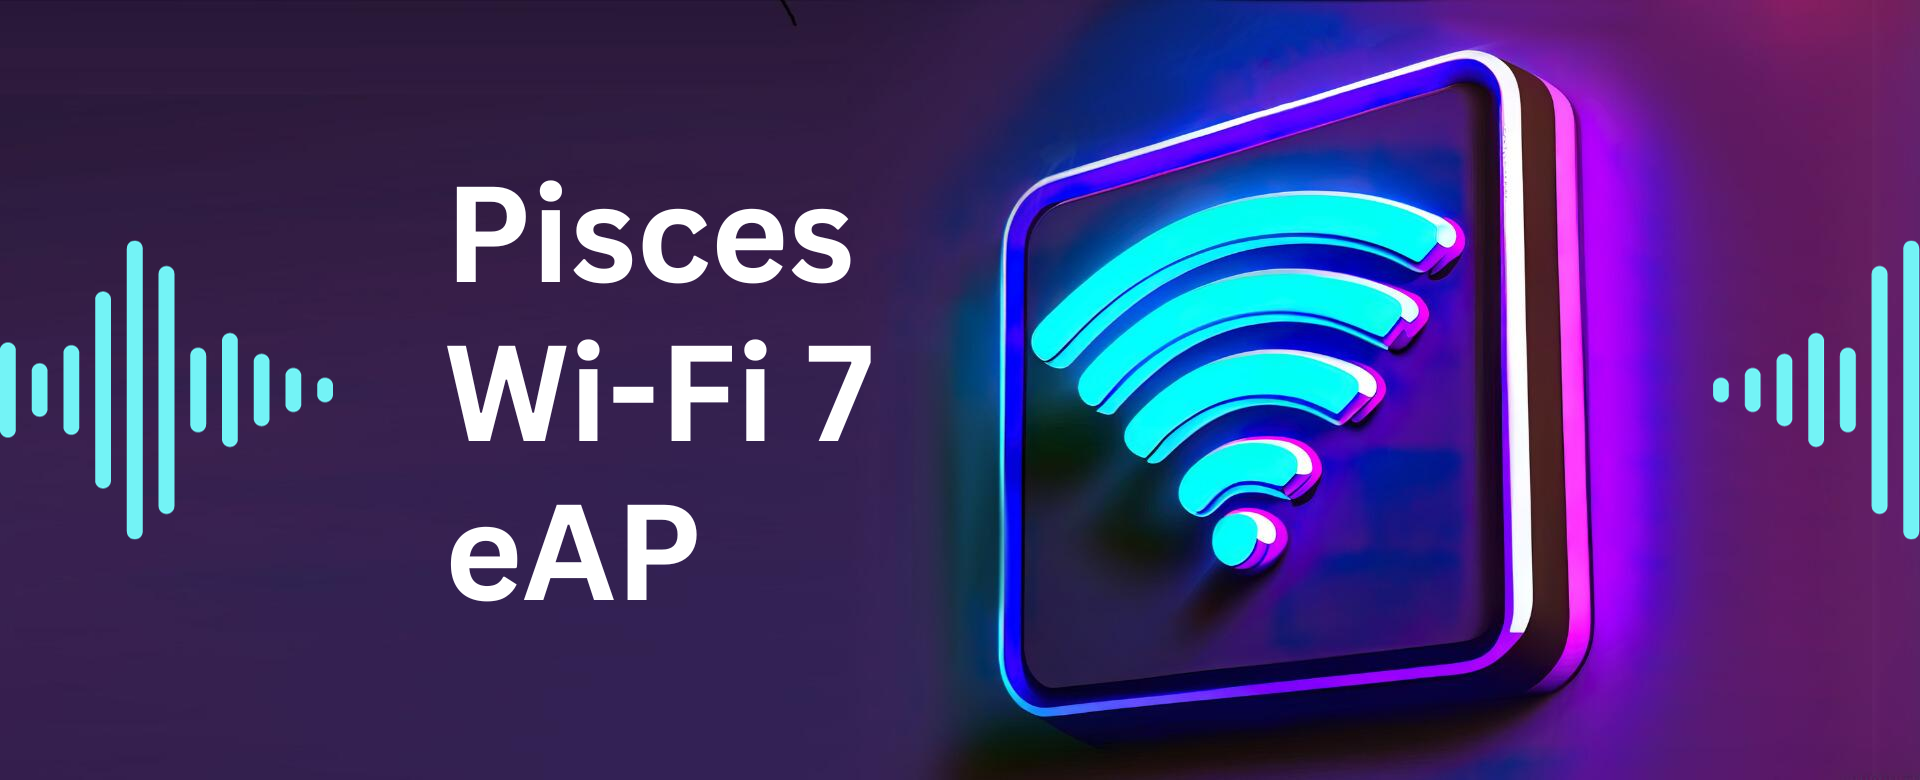 迎接Wi-Fi 7環旭電子推出Pisces企業級無線路由器 助力企業應對高密度資料挑戰